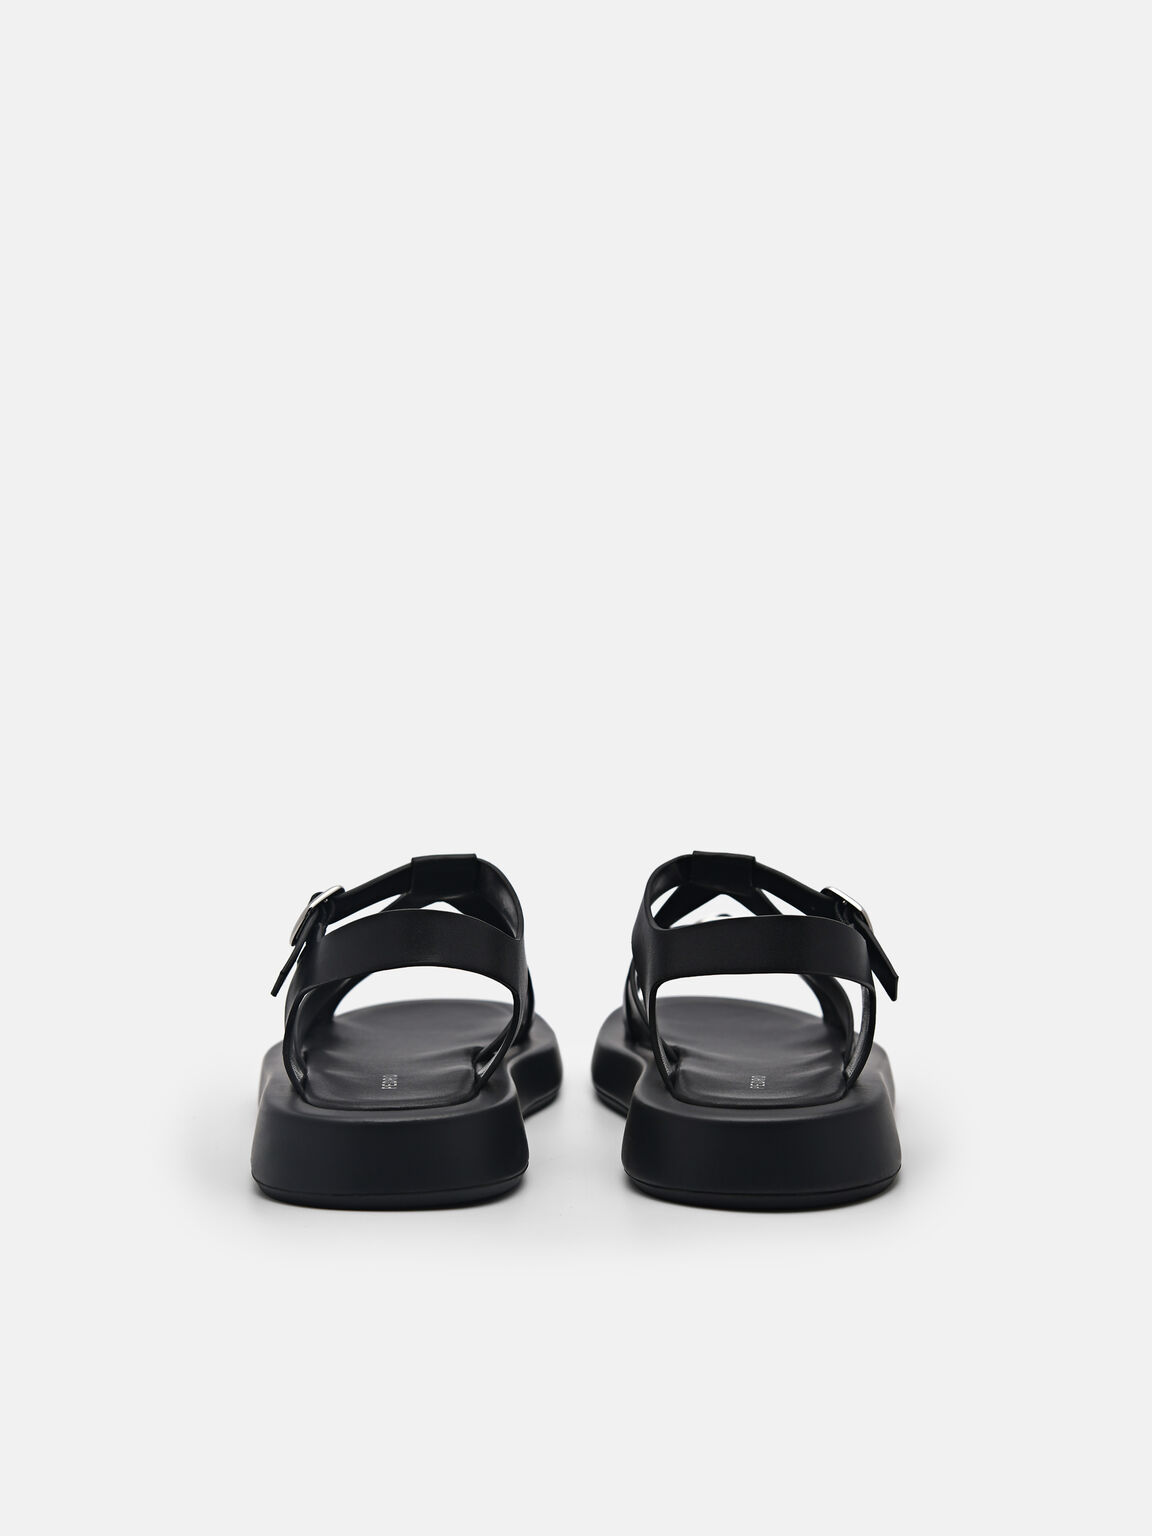 Eden Ankle Strap Sandals, Black, hi-res